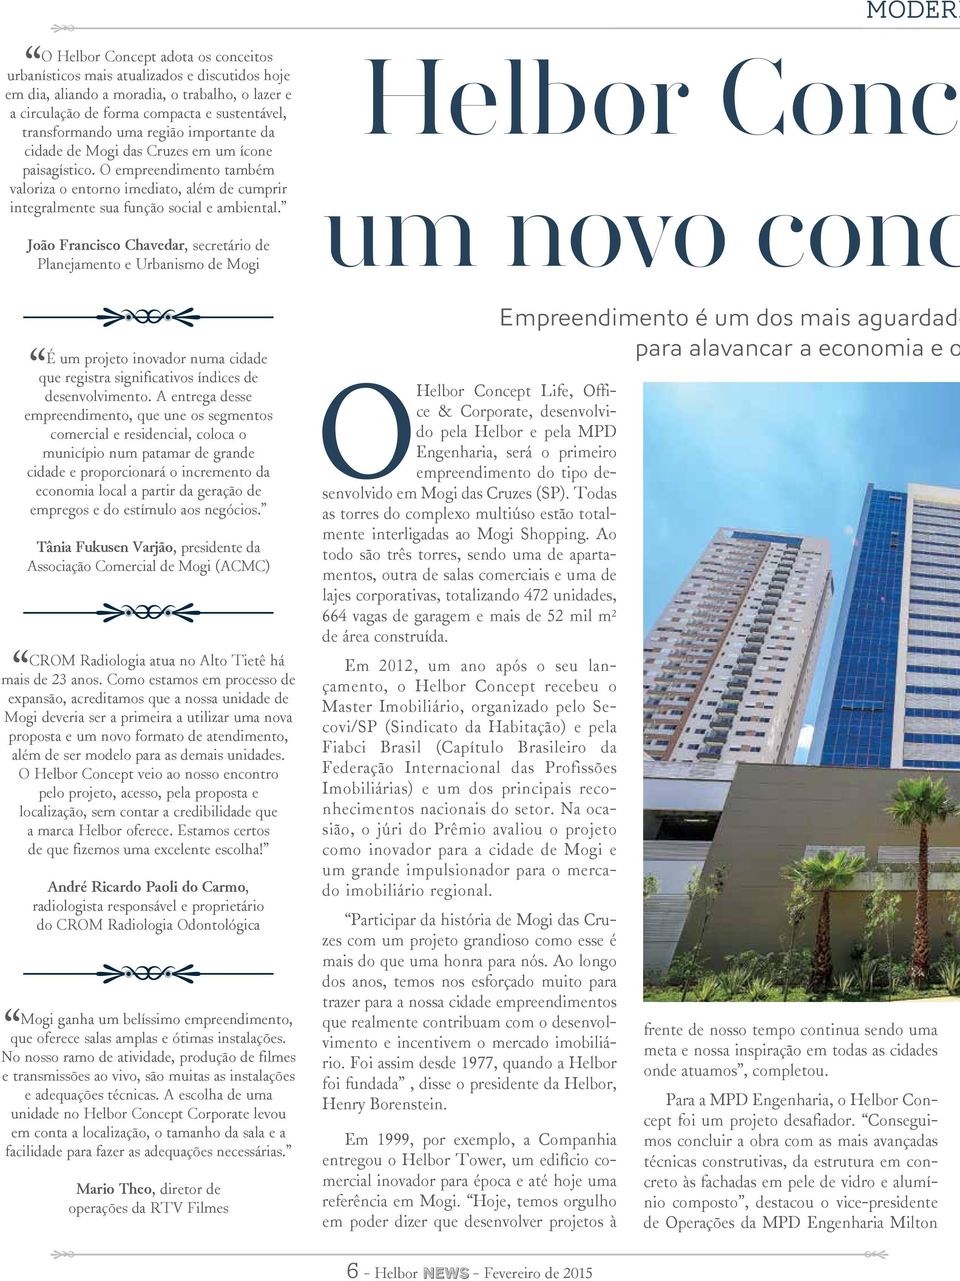 João Francisco Chavedar, secretário de Planejamento e Urbanismo de Mogi É um projeto inovador numa cidade que registra significativos índices de desenvolvimento.